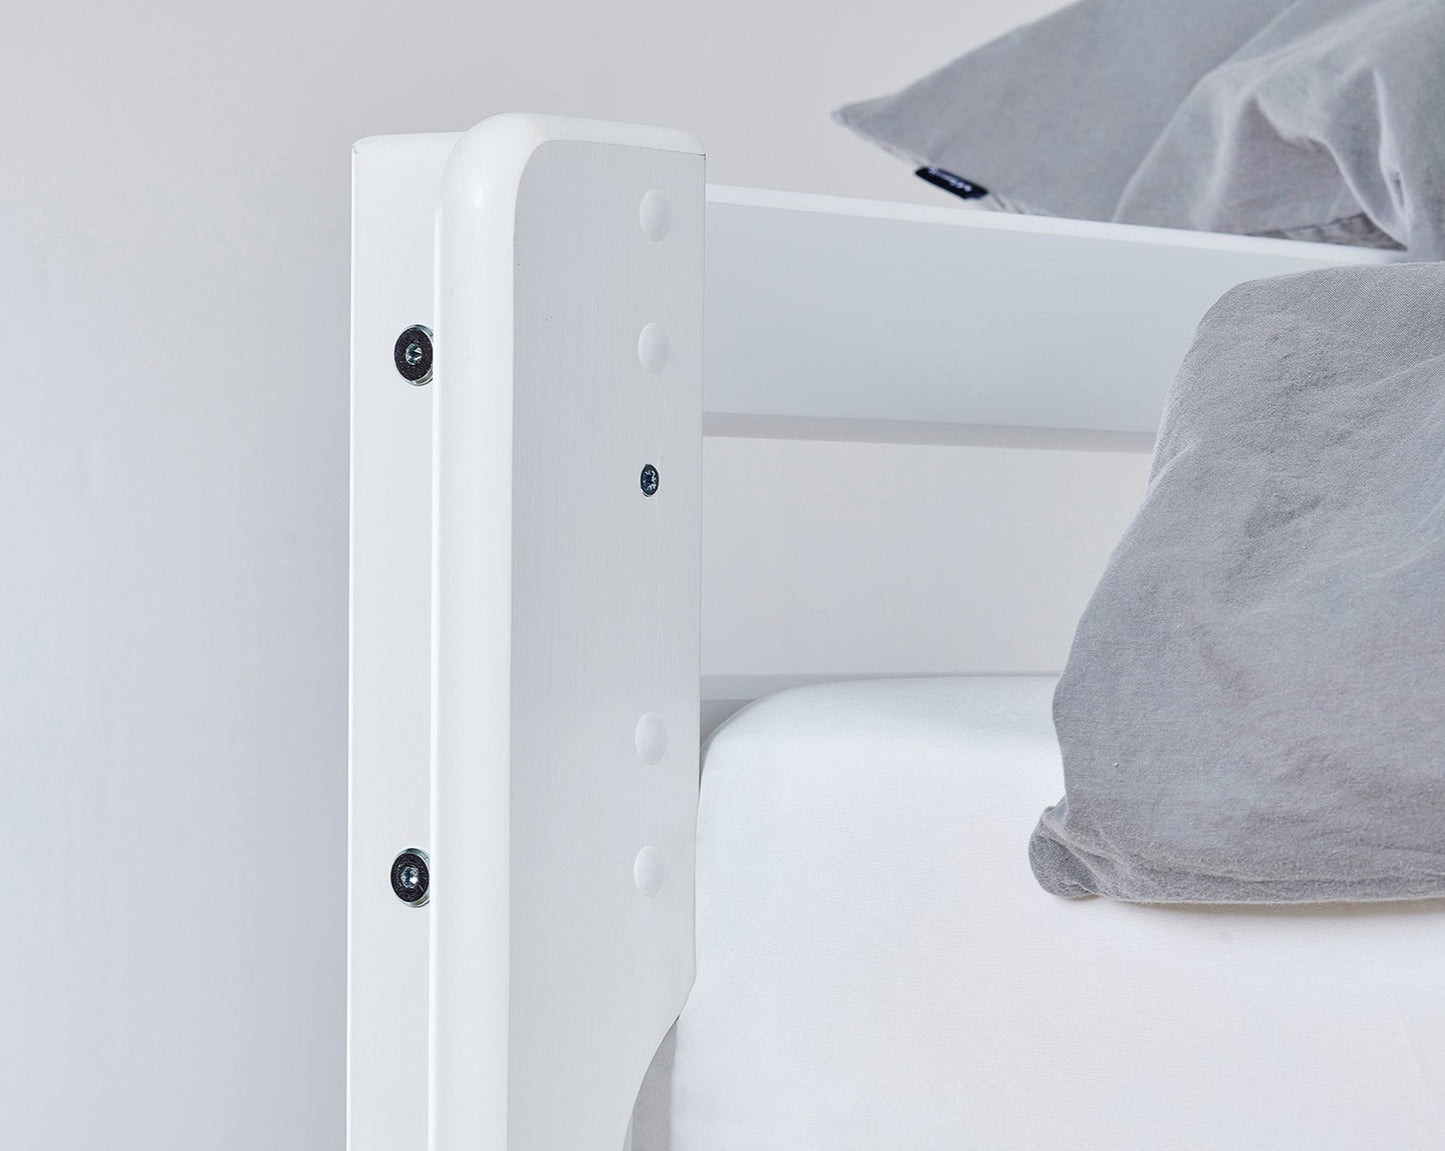 Eco Dream - Высокая спальная кровать с письменным столом - 90x200 см - Белый